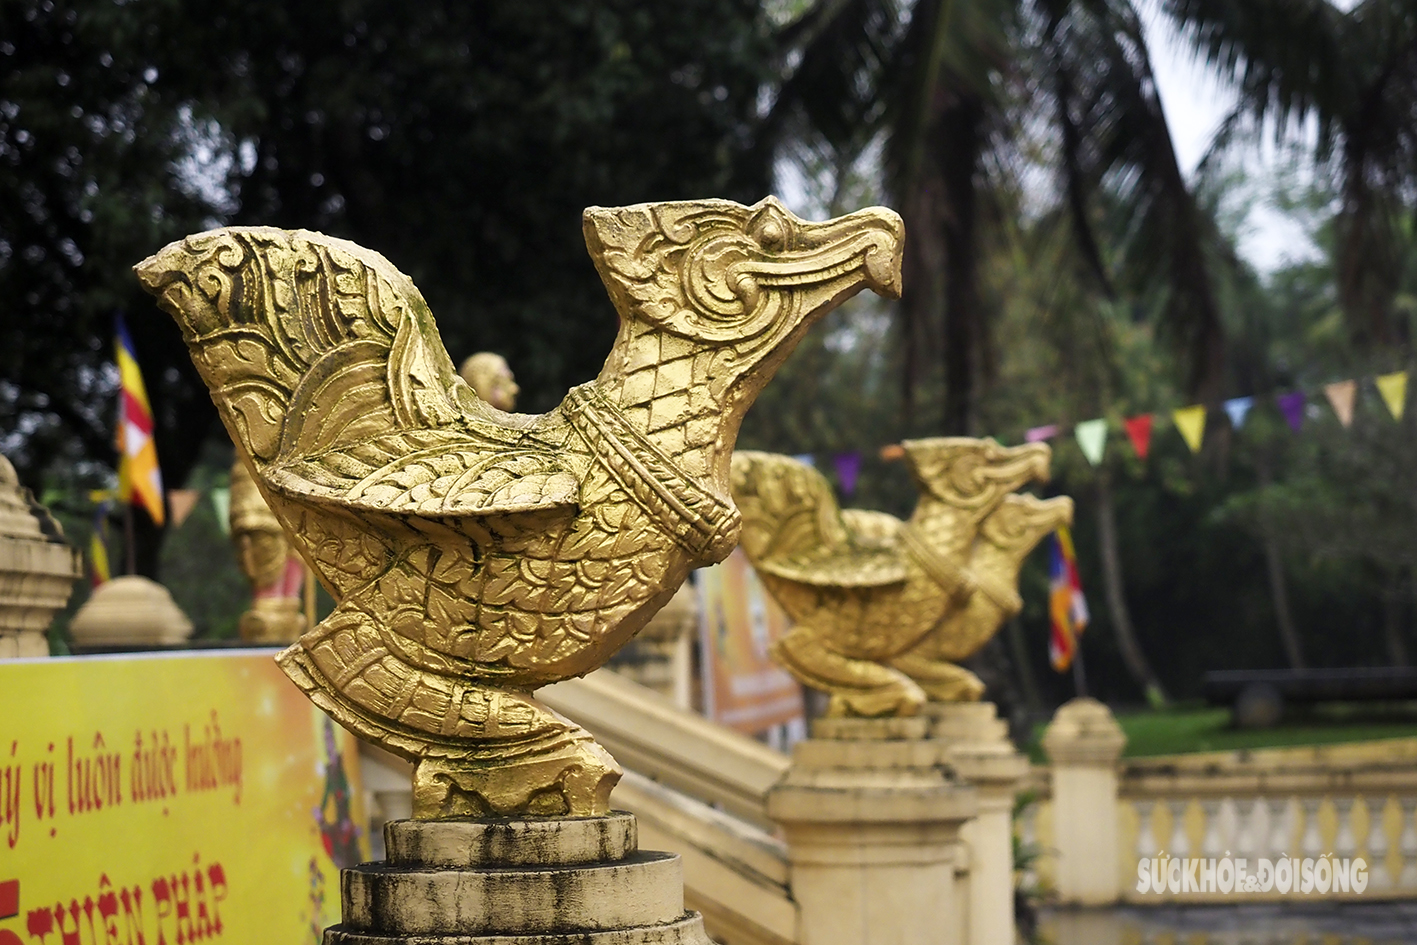 Ấn tượng ngôi chùa Khmer giữa Thủ đô Hà Nội - Ảnh 9.